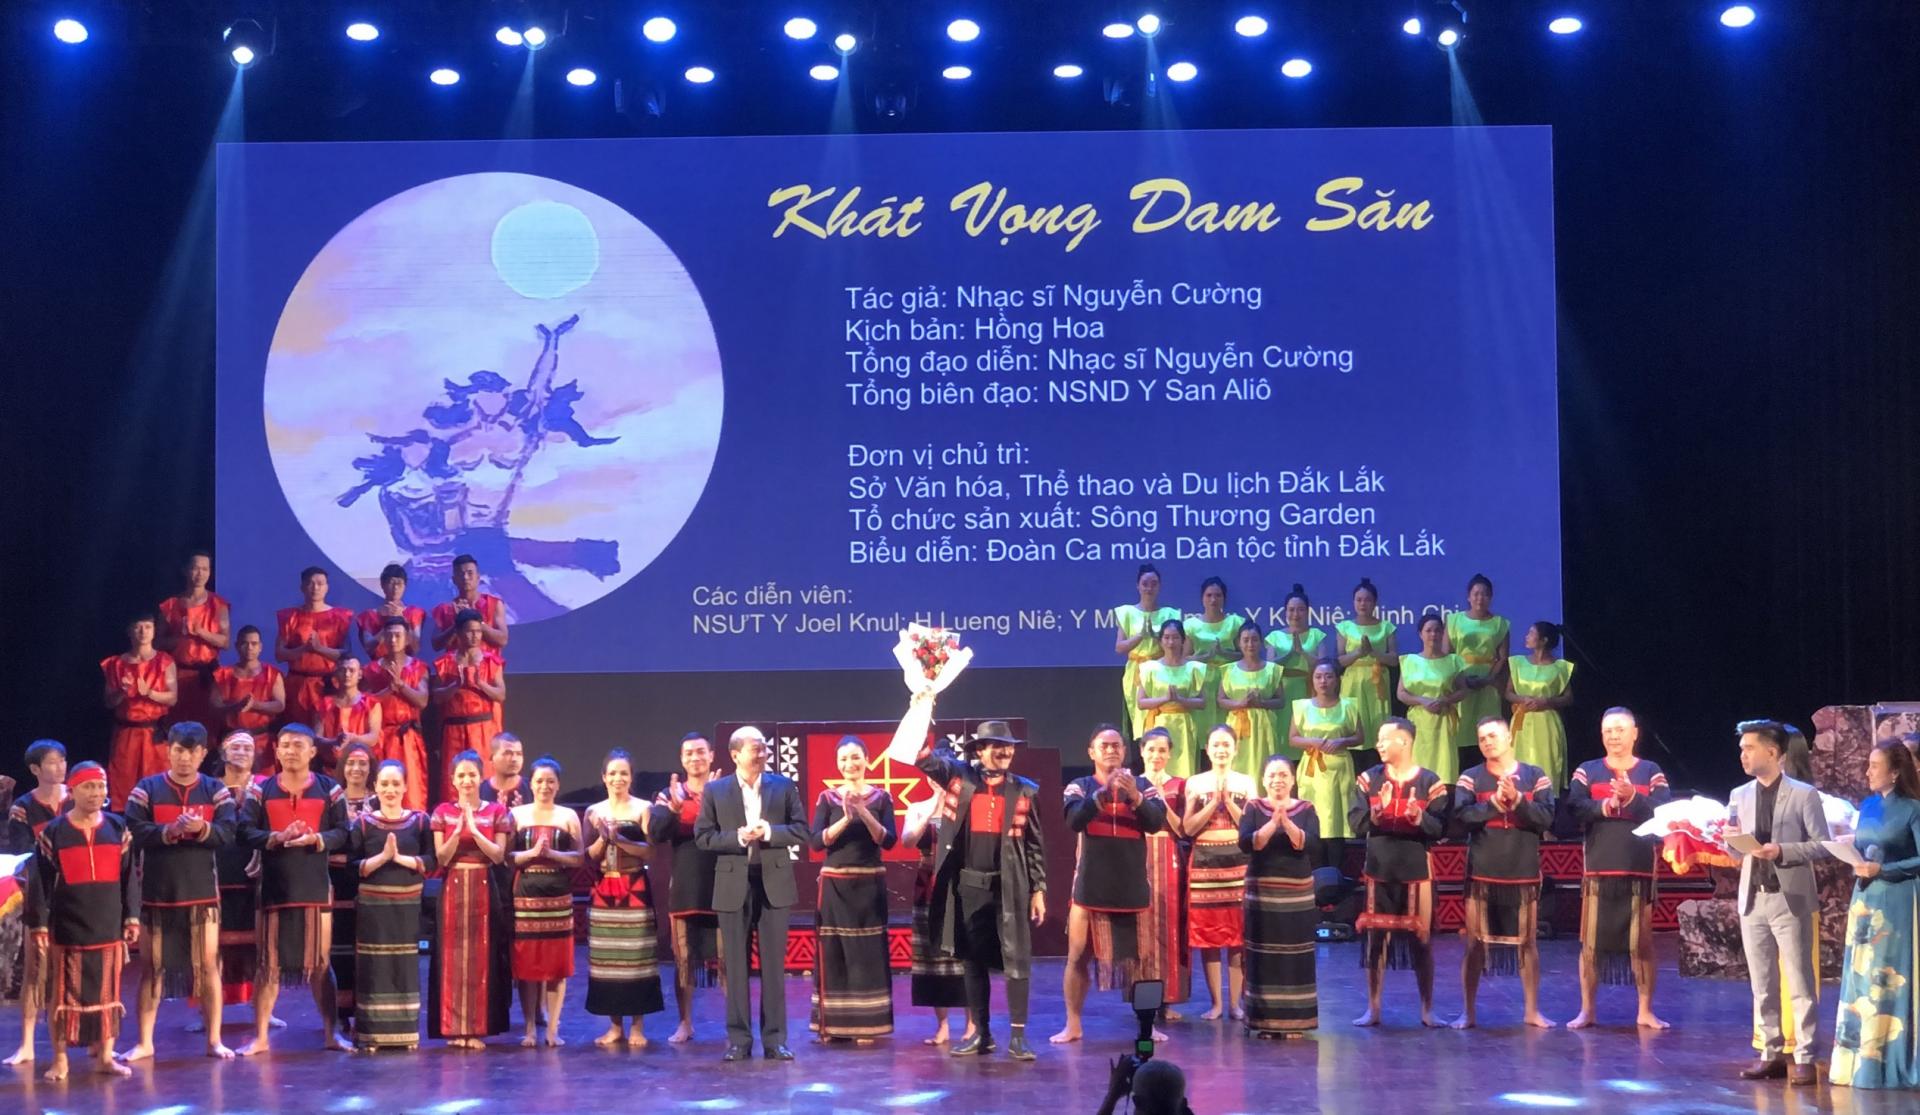 Đắk Lắk tổ chức đêm nhạc Nguyễn Cường và biểu diễn Ca kịch “Khát vọng Dam Săn”